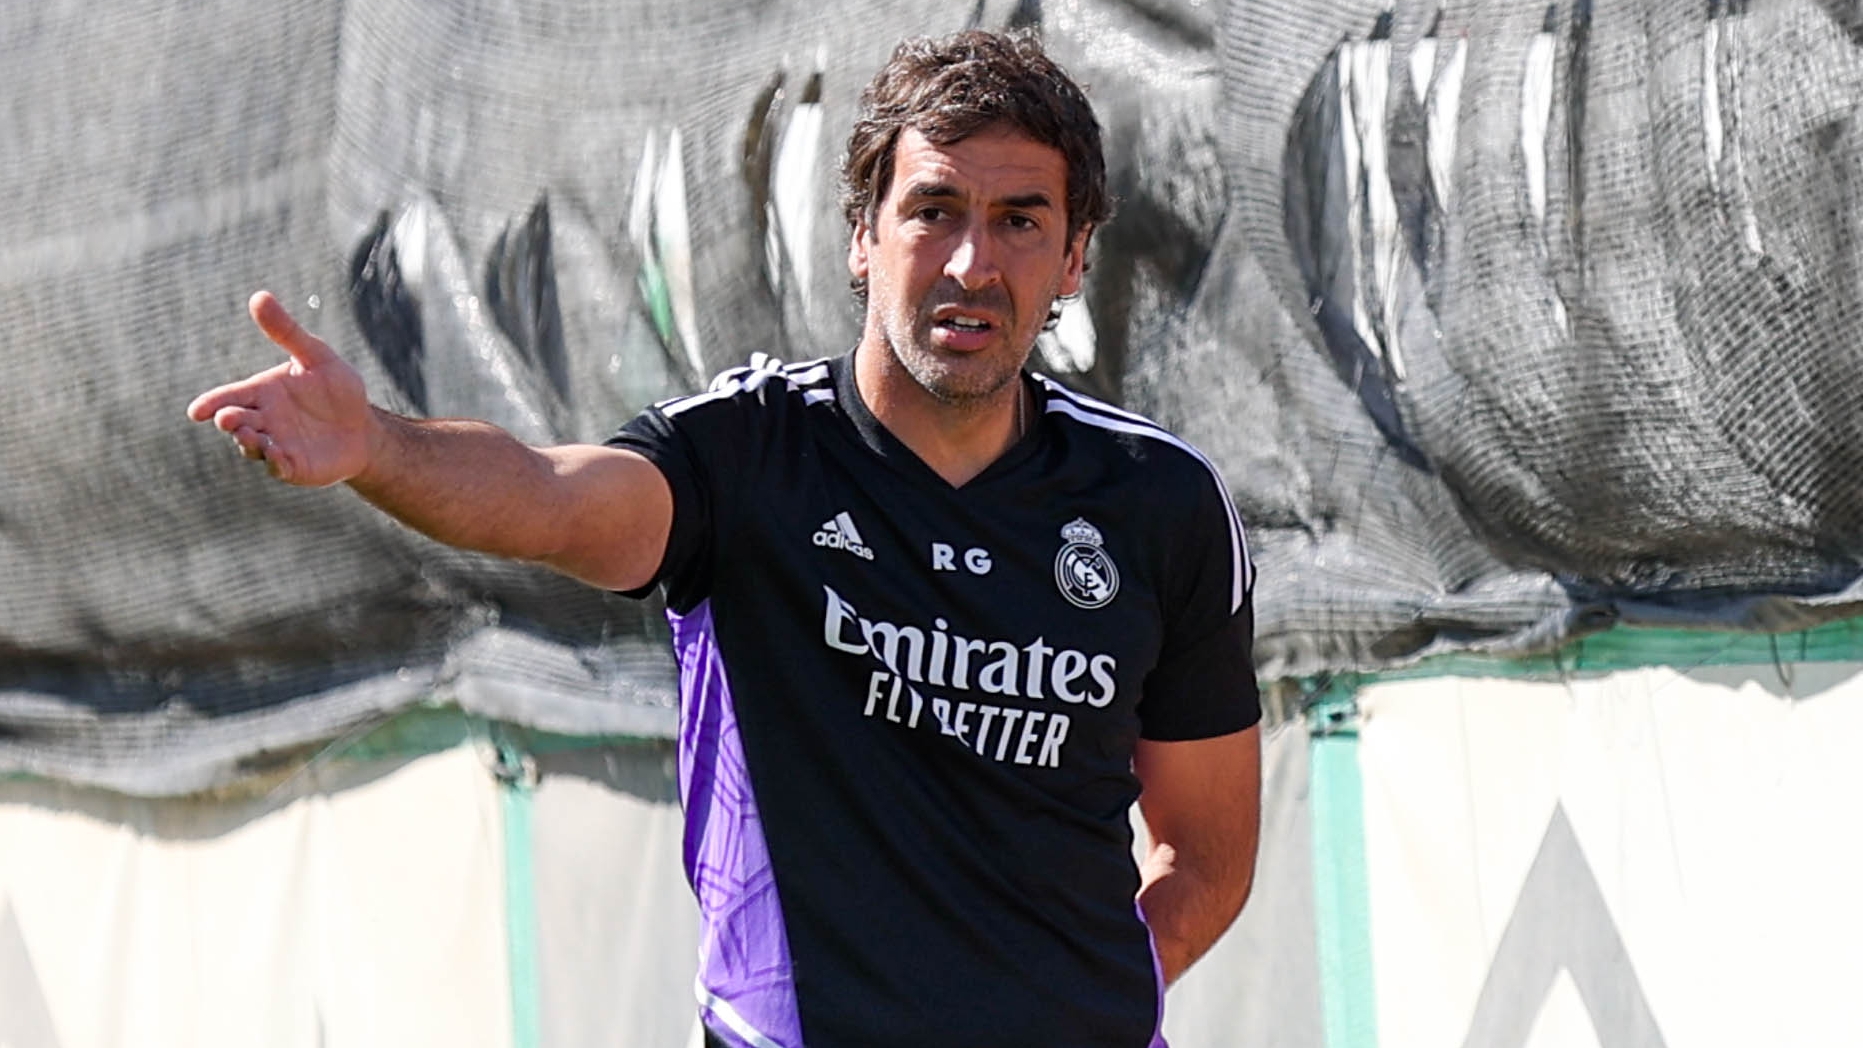 Le preguntan a Raúl por entrenar al Madrid y la respuesta tiene mucha miga